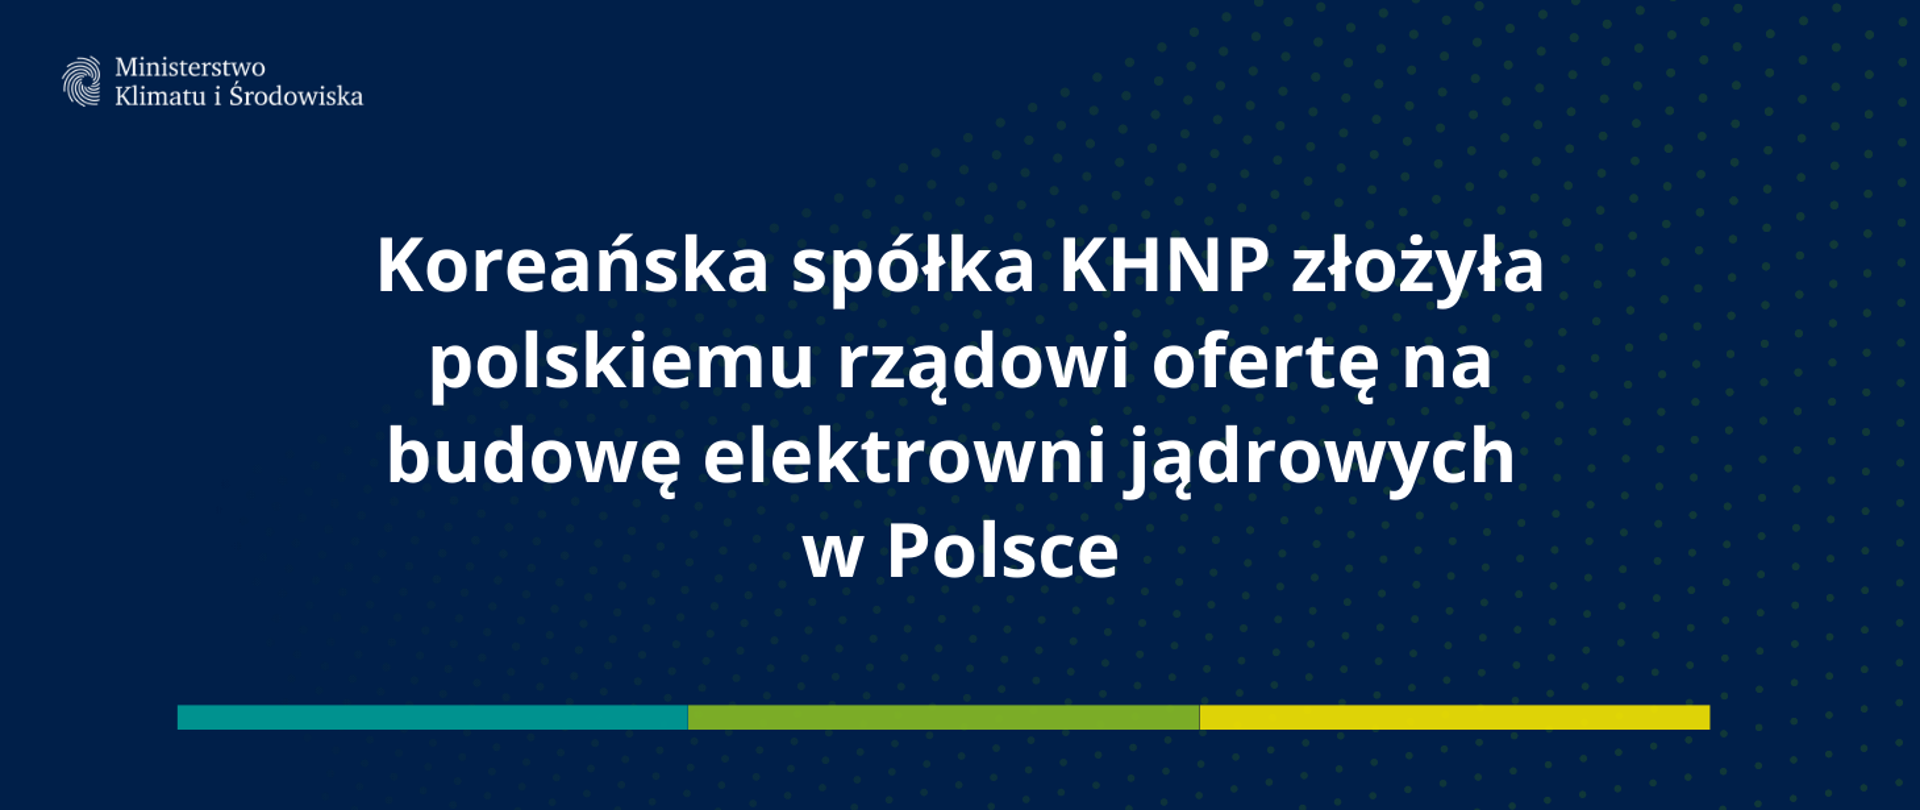 Koreańska spółka KHNP złożyła polskiemu rządowi ofertę na budowę elektrowni jądrowych w Polsce